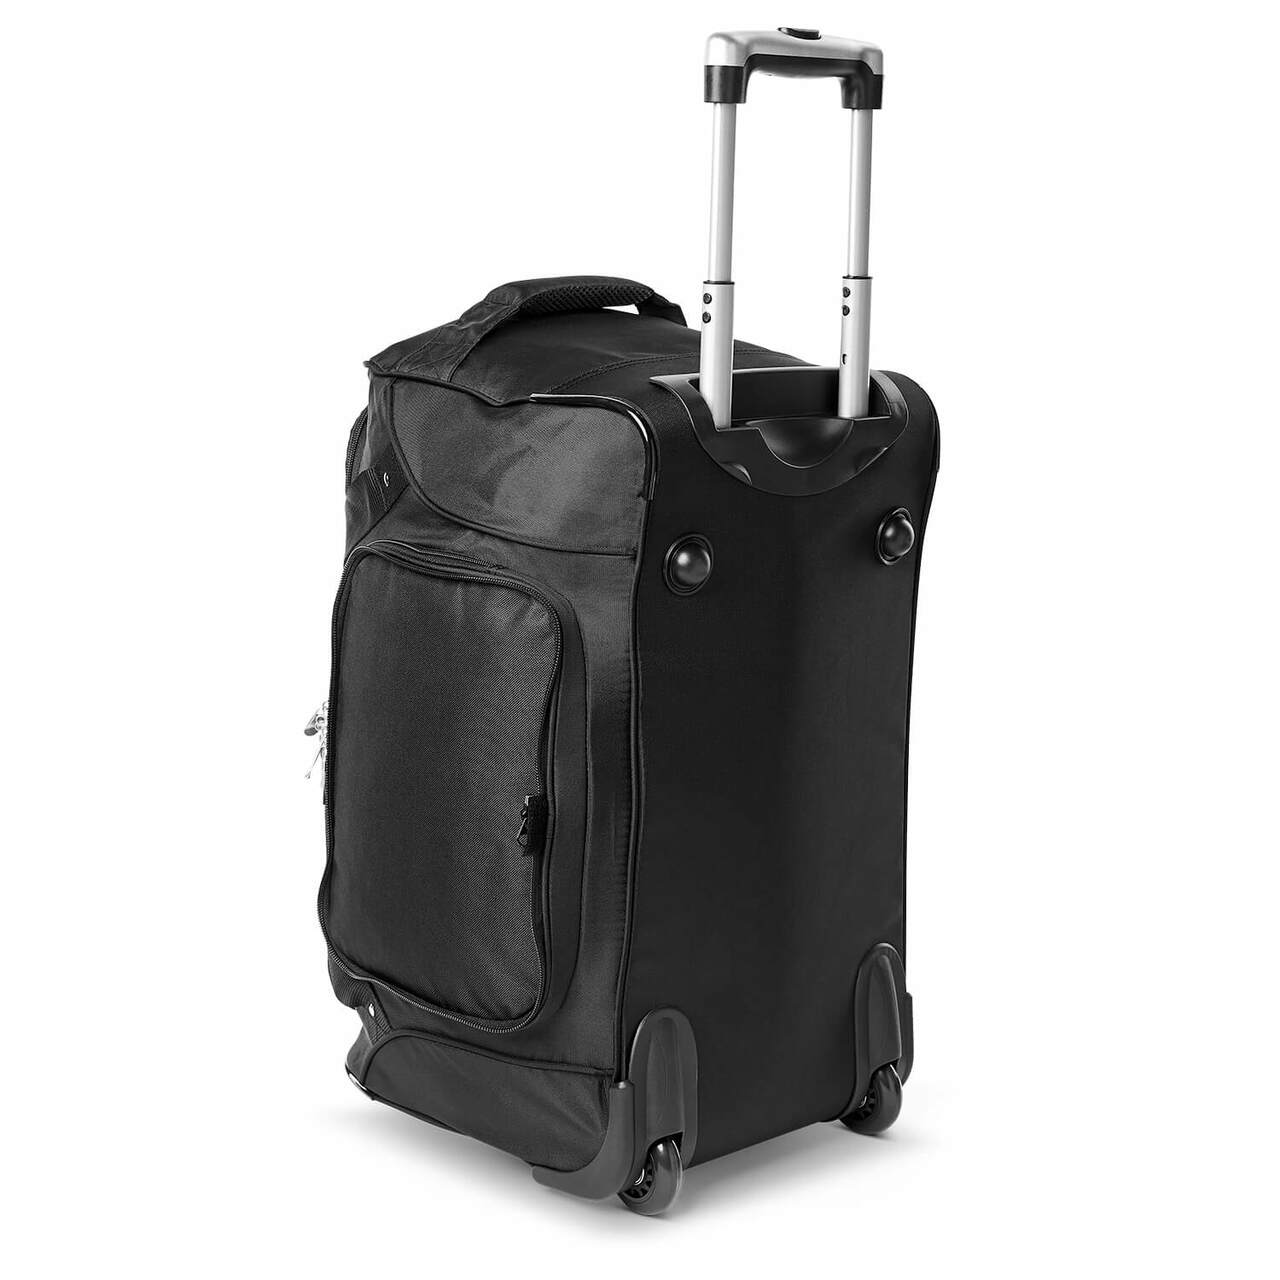 Wake Forest Luggage | Wake Forest Wheeled Carry On Luggage